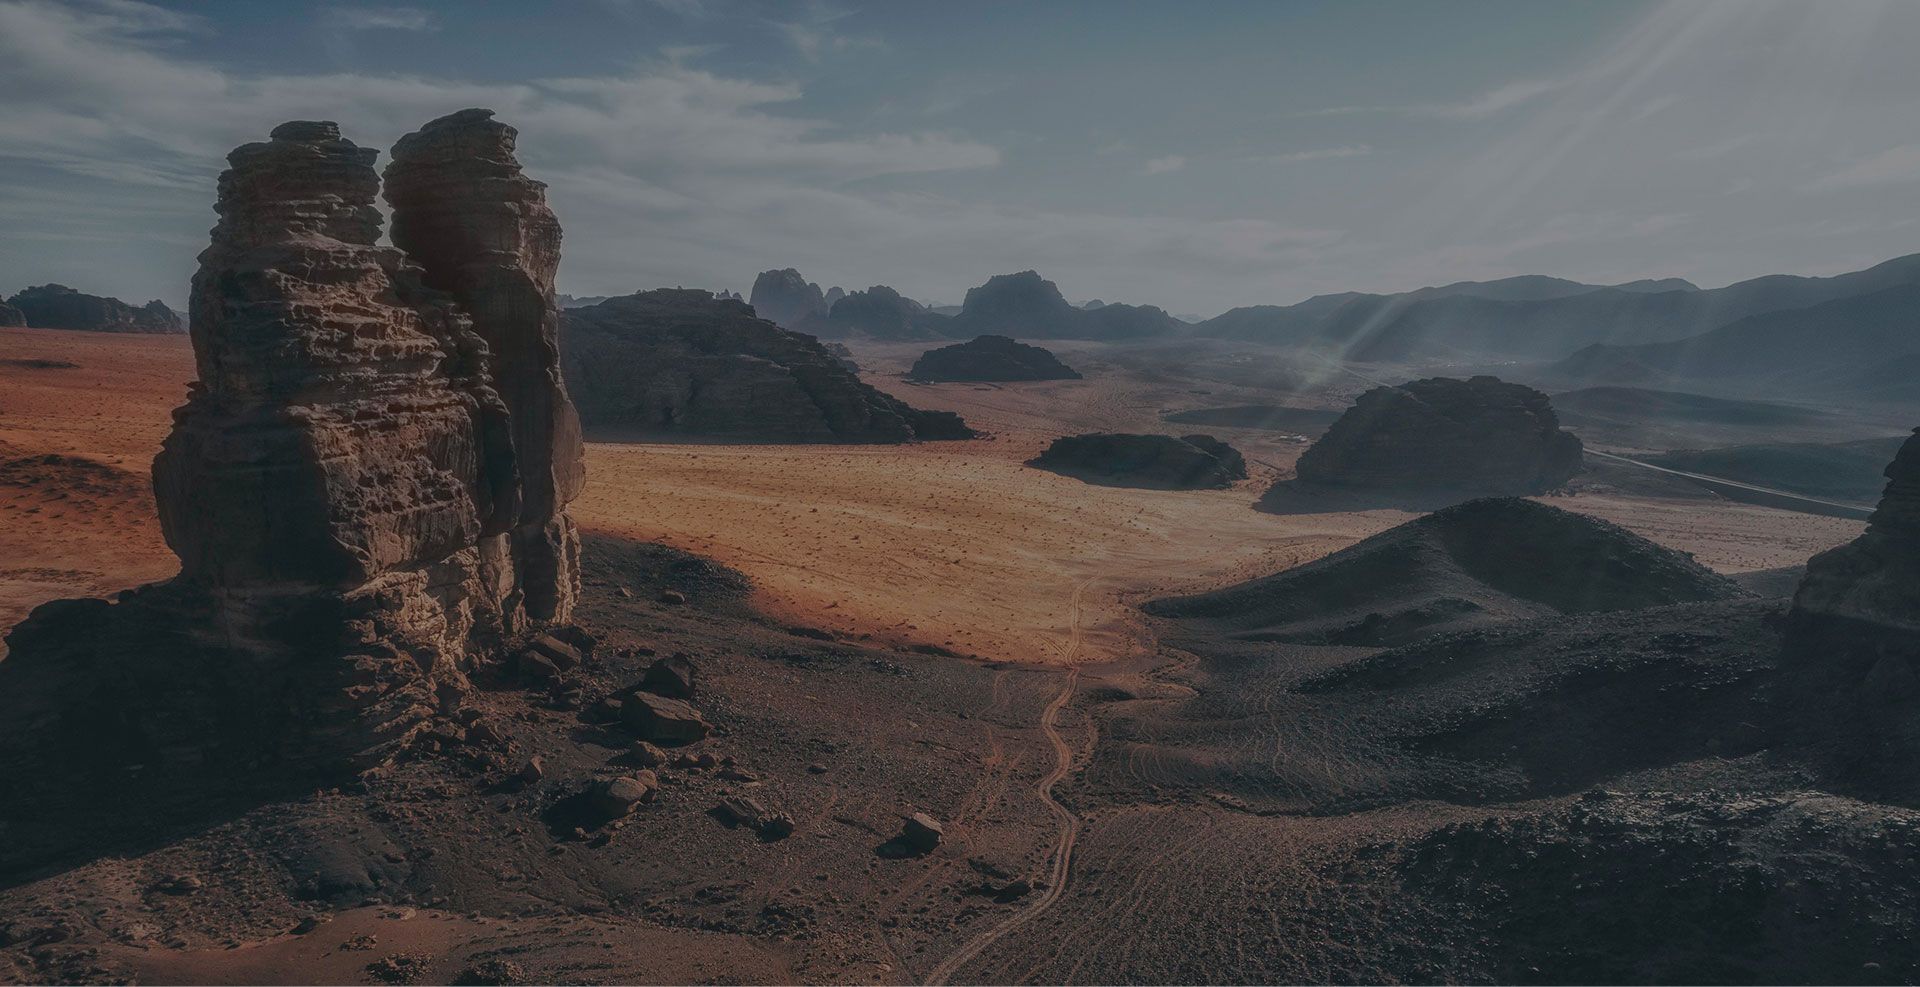  NEOMの砂漠と山地地形の風景